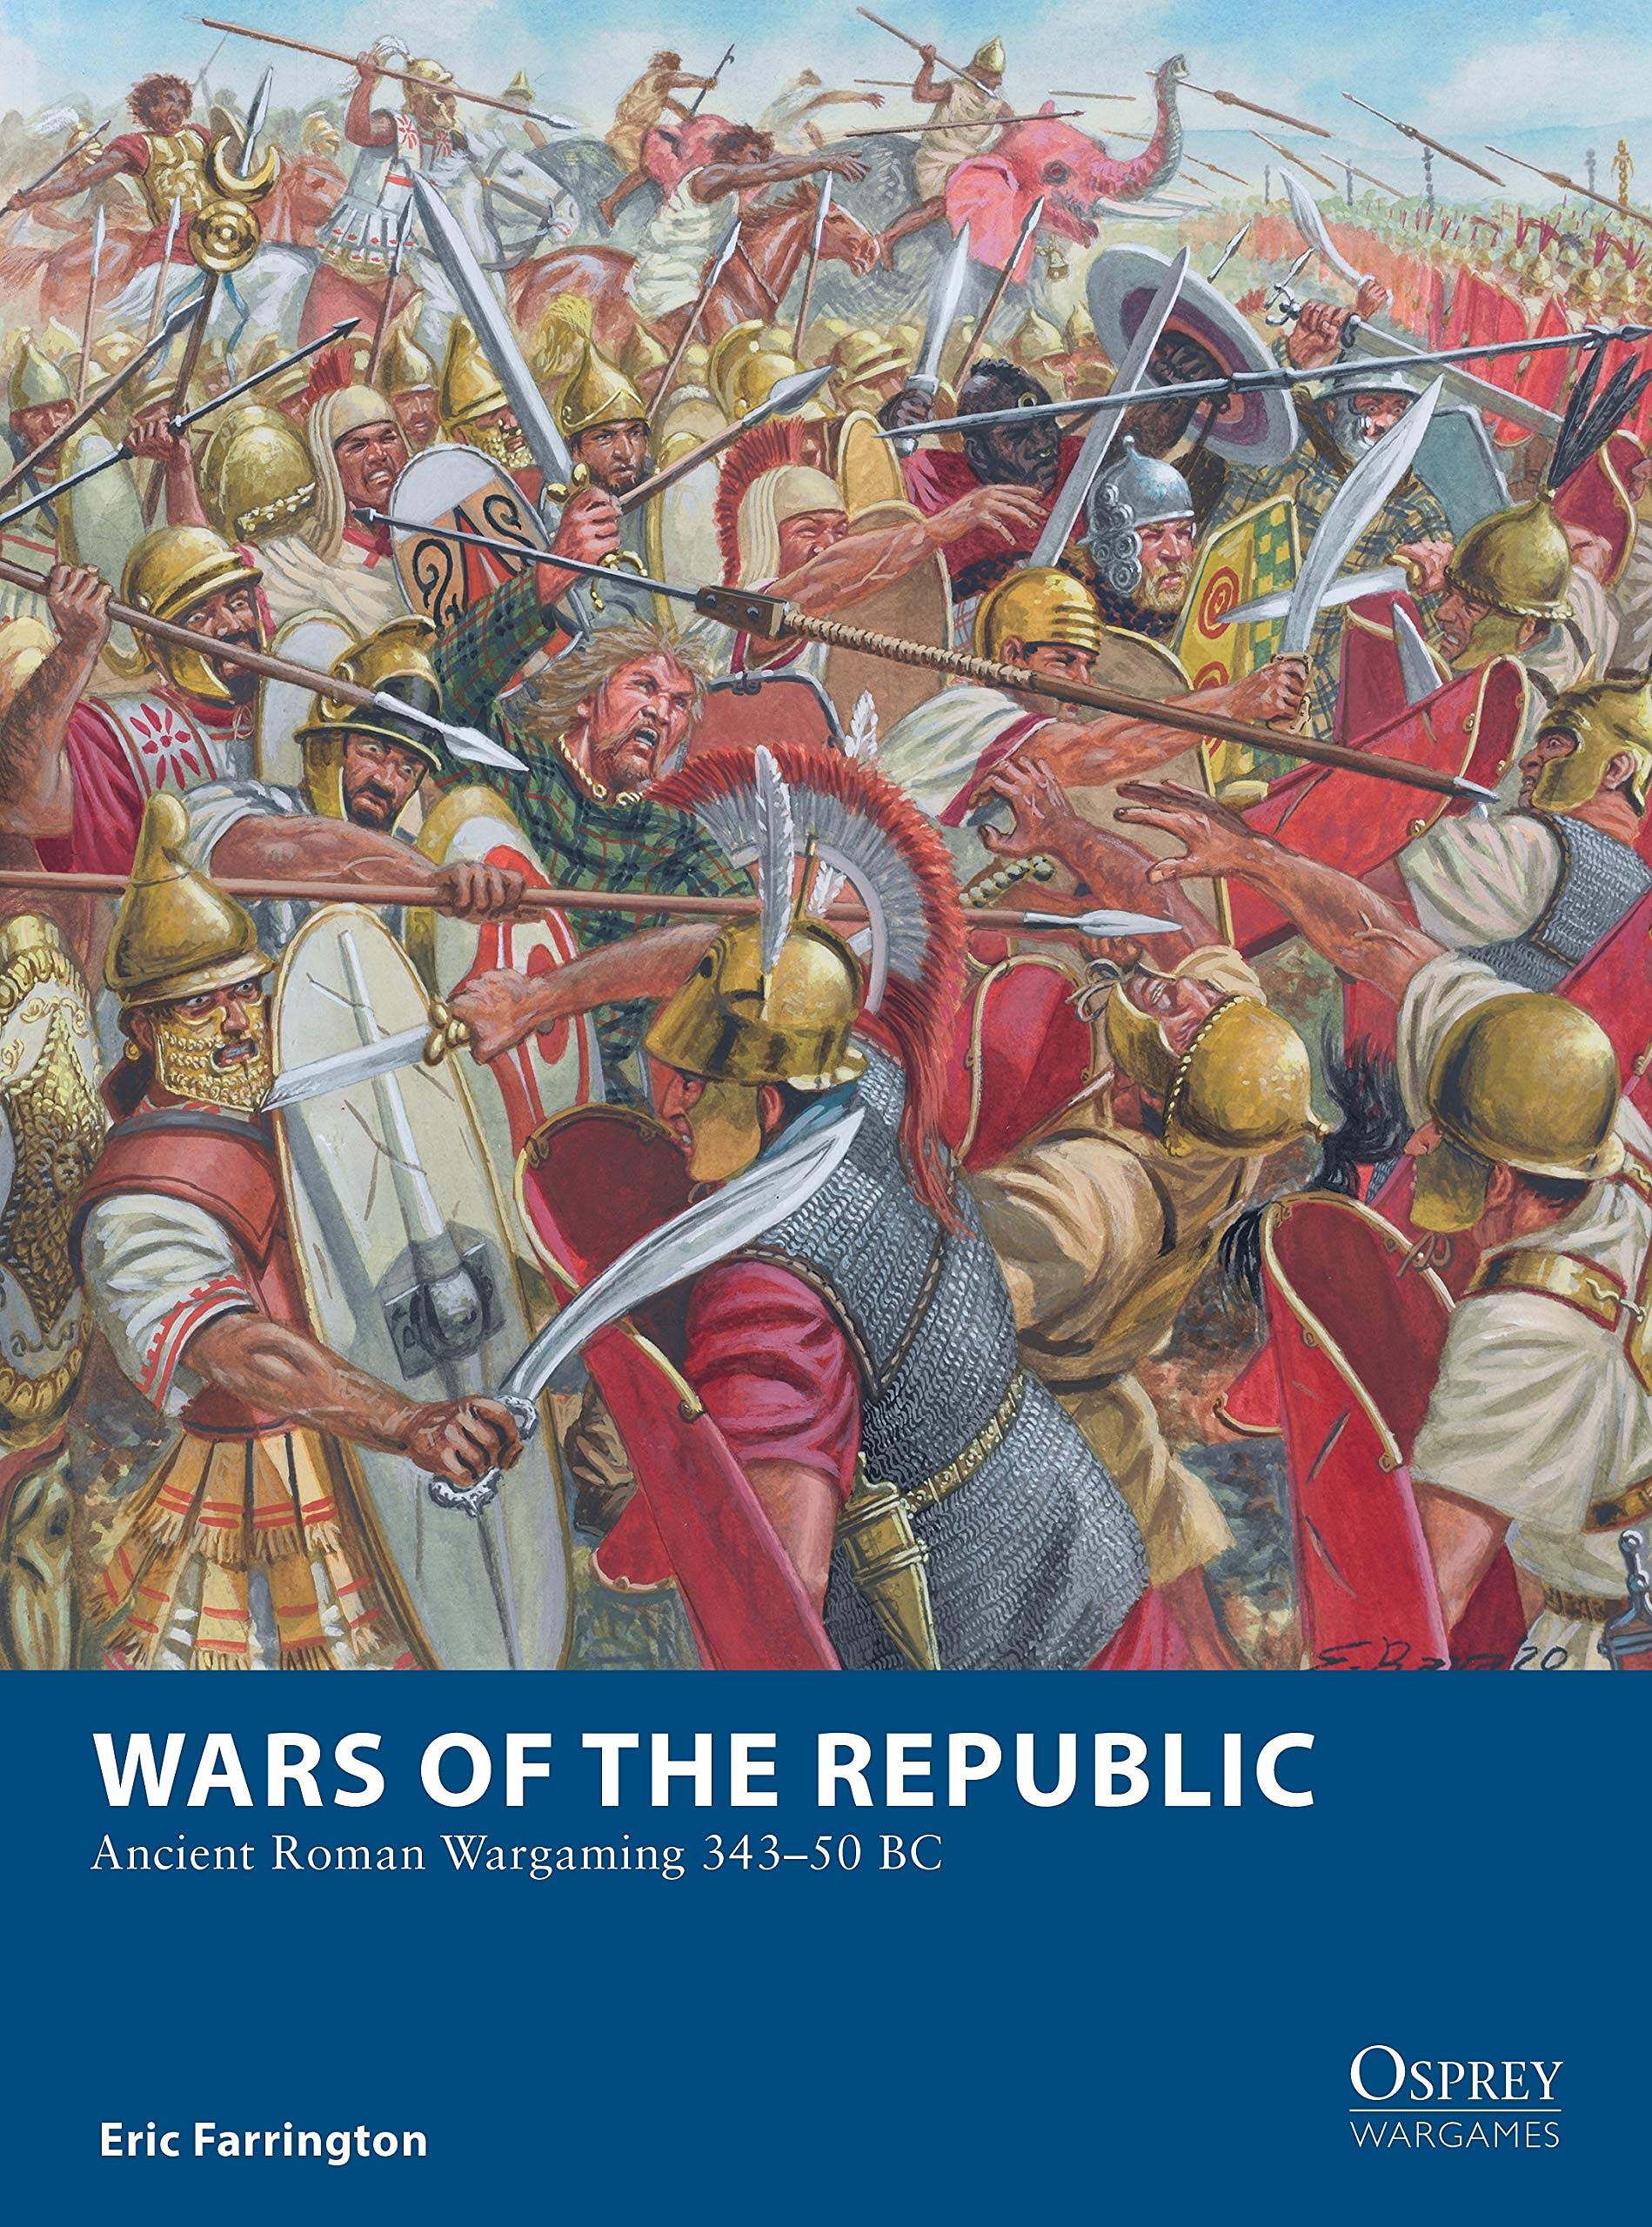 Войны между римлянами. Римские Легионы Пунические войны. Giuseppe Rava художник. Римские легионеры Пунические войны.